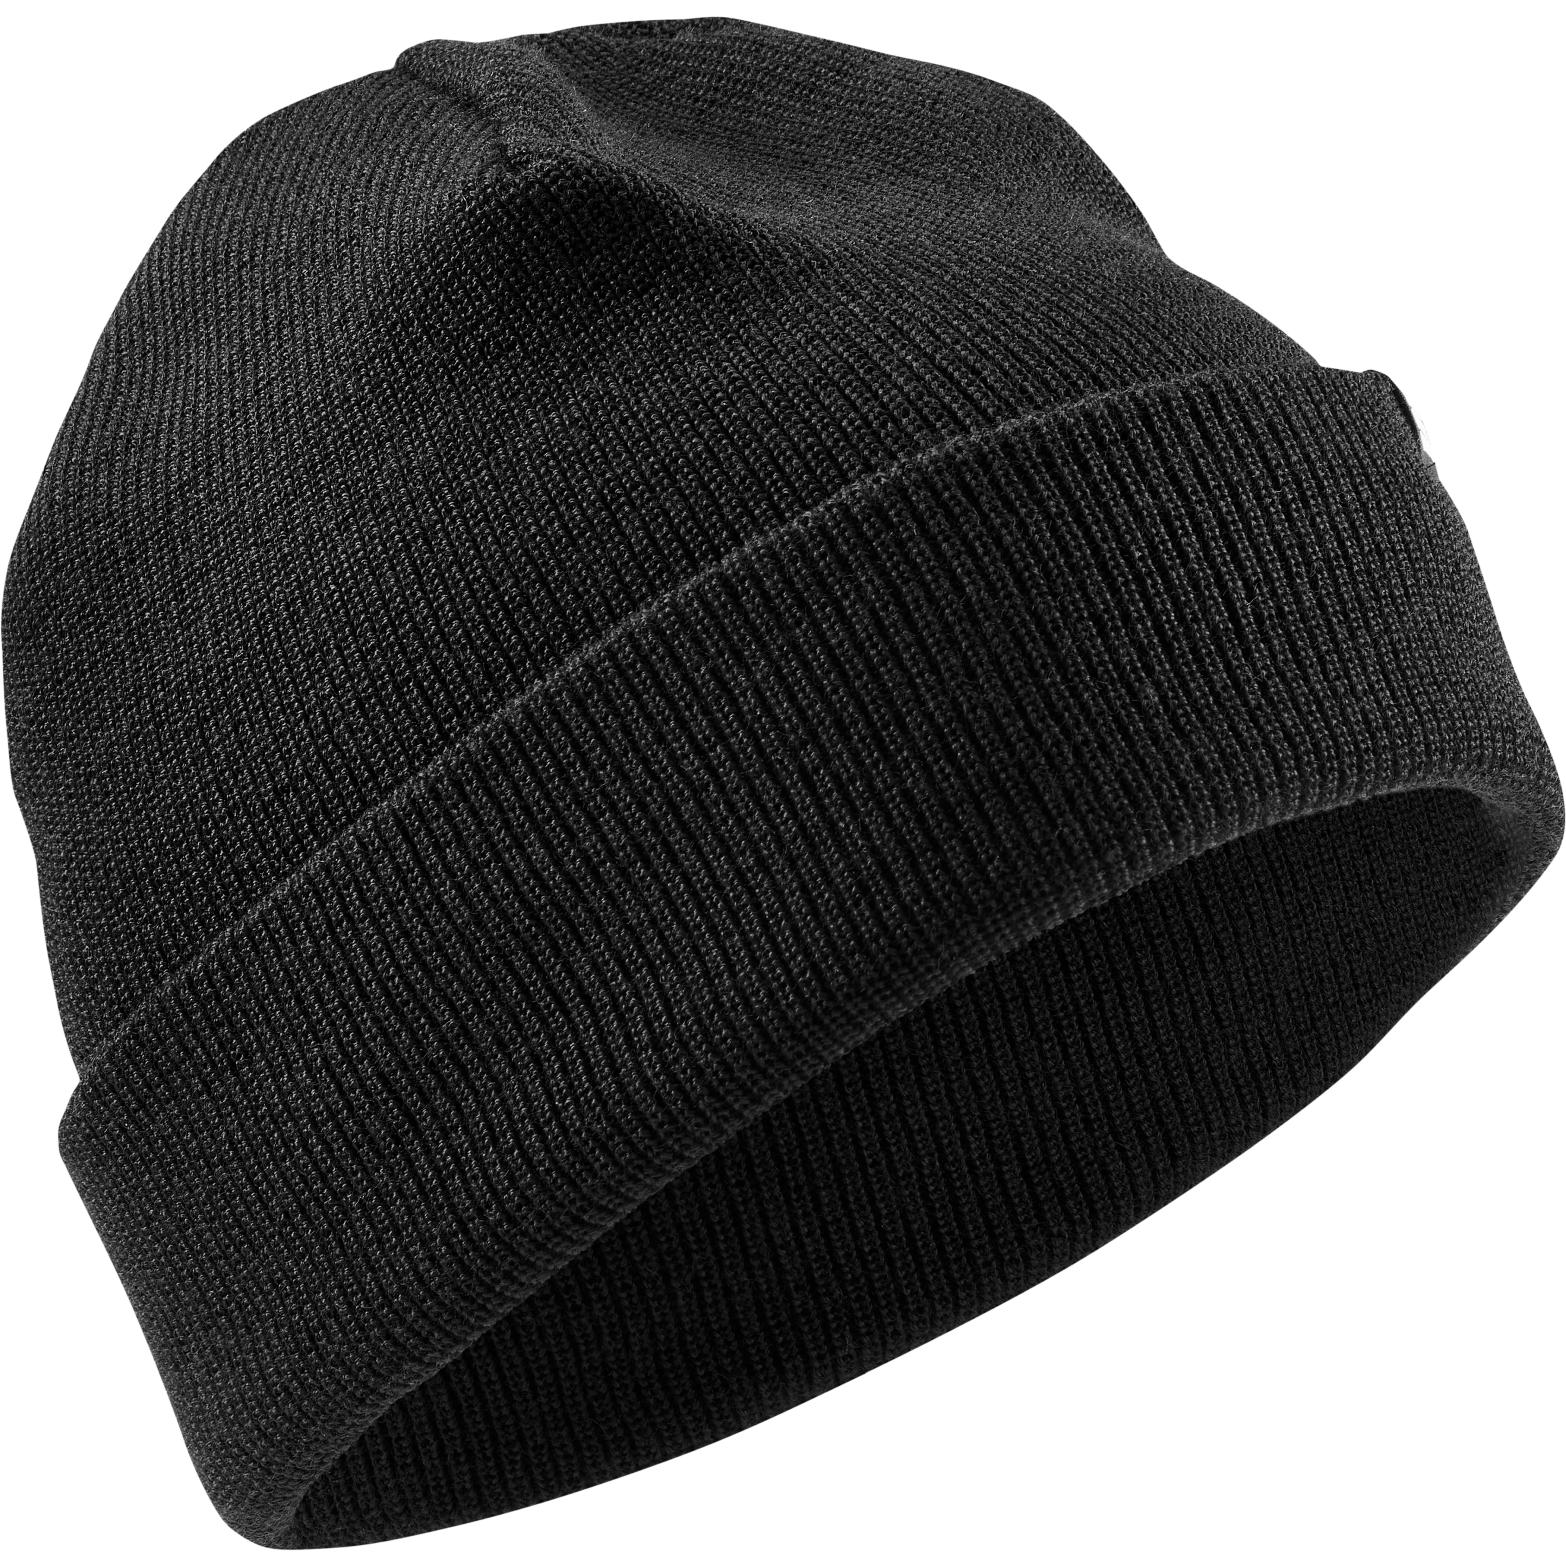 Produktbild von CEP Cold Weather Merino Mütze - schwarz